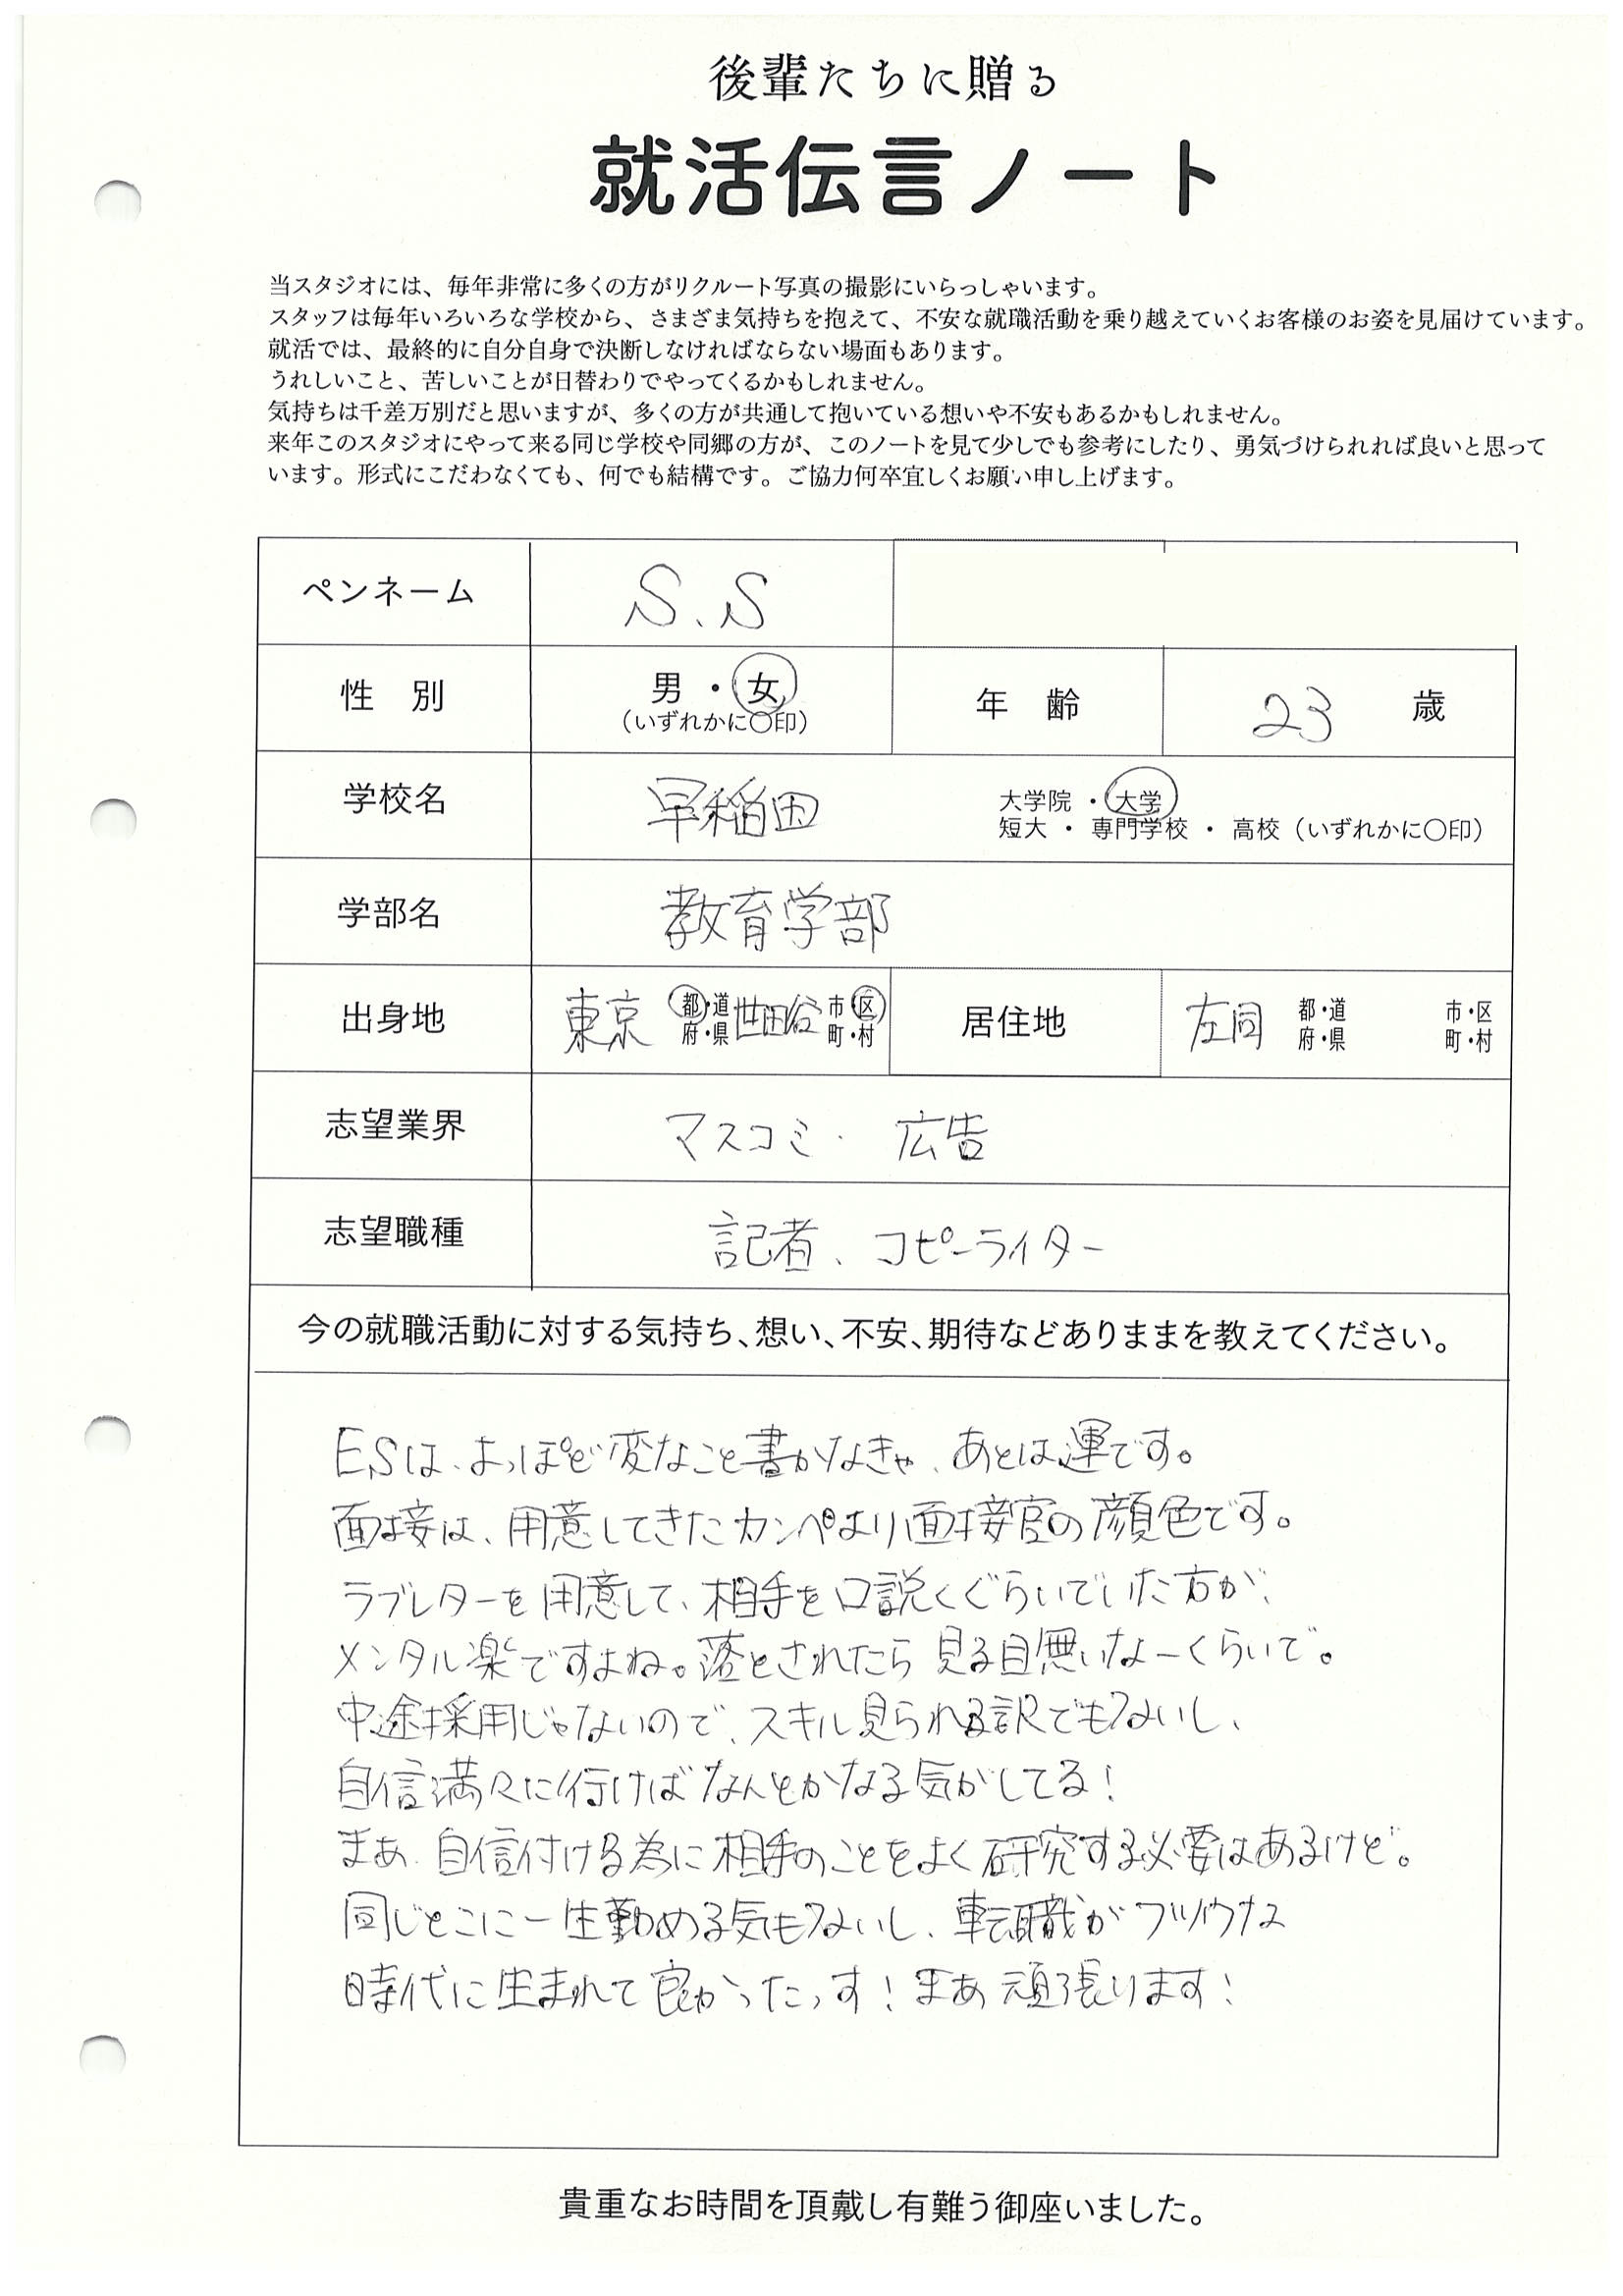 早稲田大学 教育学部 S.Sさんの直筆メッセージ リクルートフォトスタジオで就活証明写真を撮影